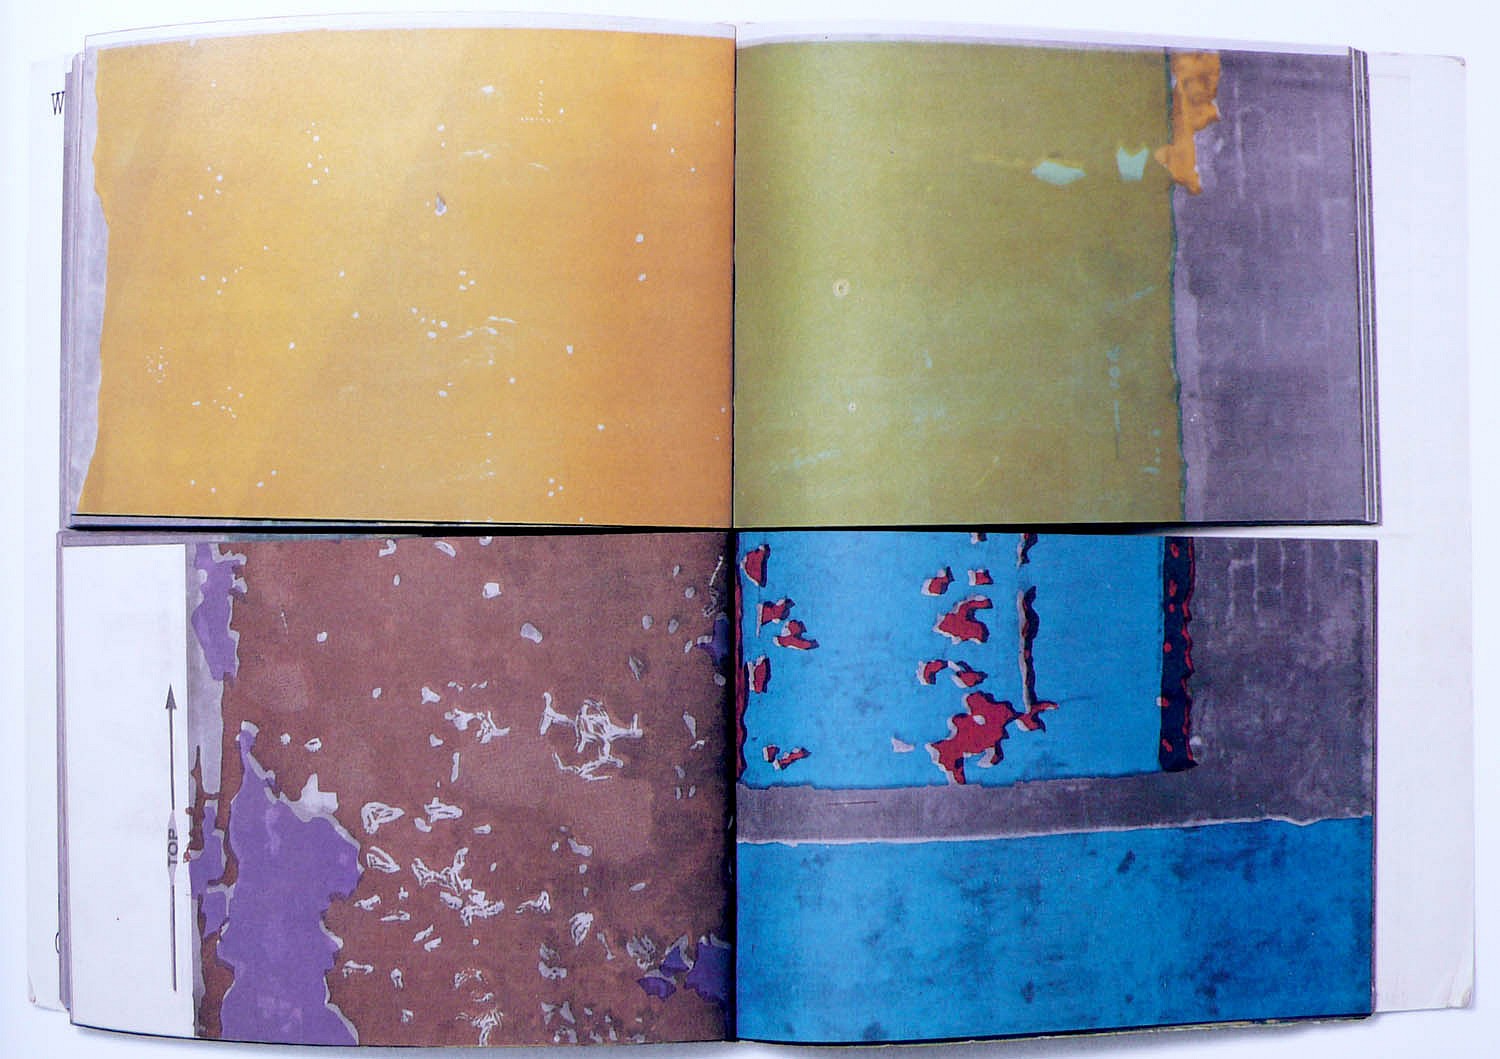 Gordon Matta-Clark | Walls paper | 1973 | Zucker Art Books